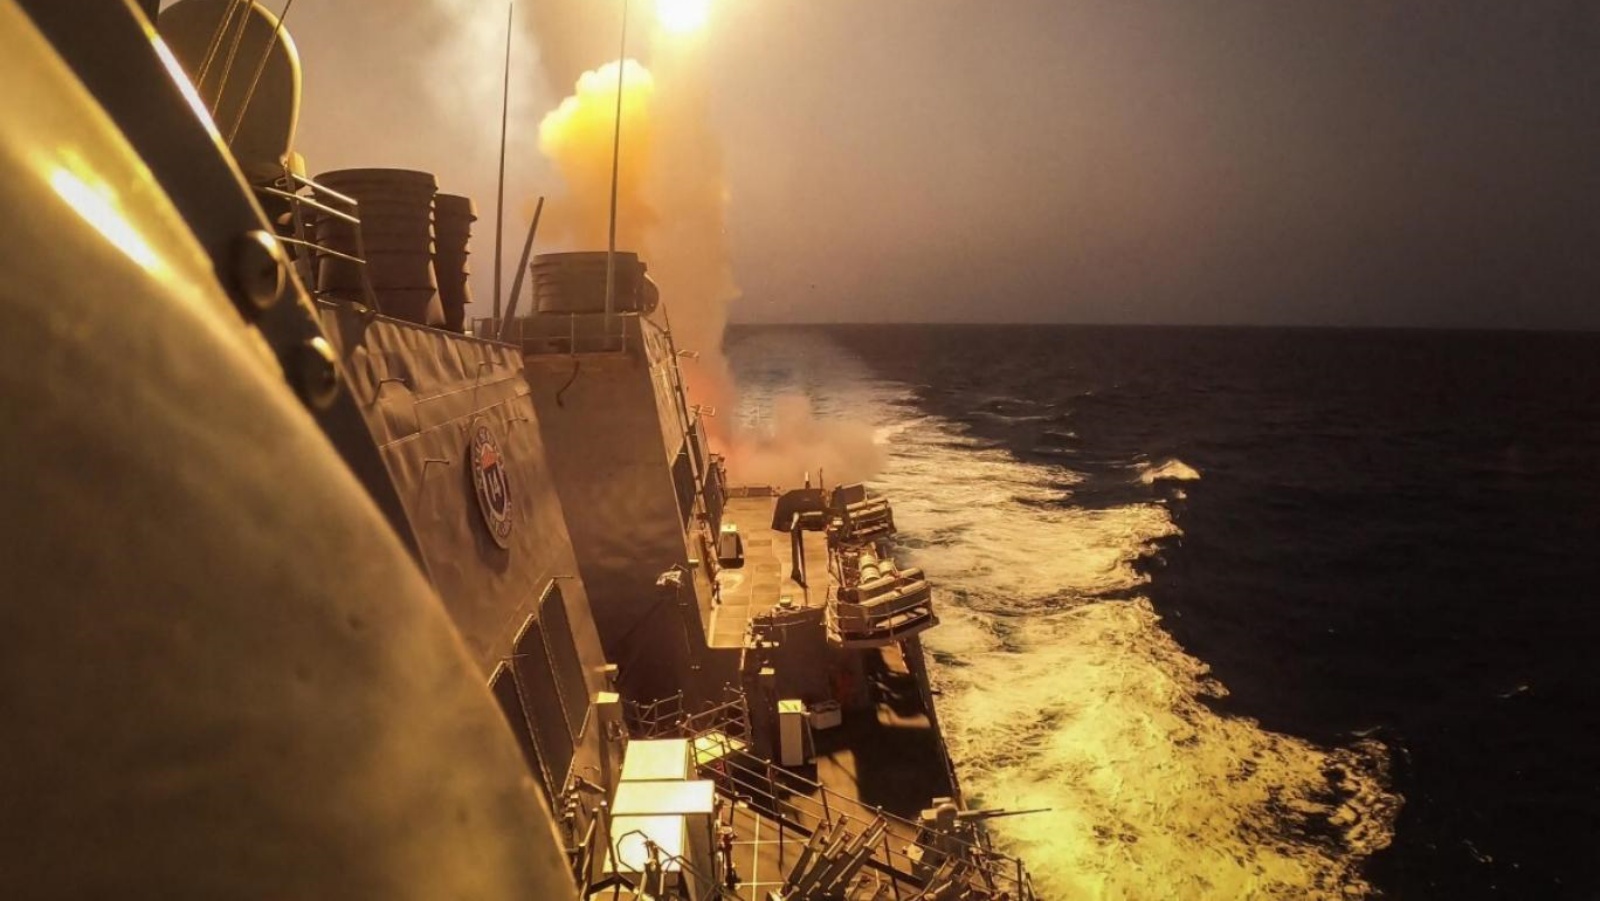 سفينة تابعة للبحرية الأميركية في البحر الأحمر أسقطت صواريخ وطائرات مسيرة أطلقها الحوثيون